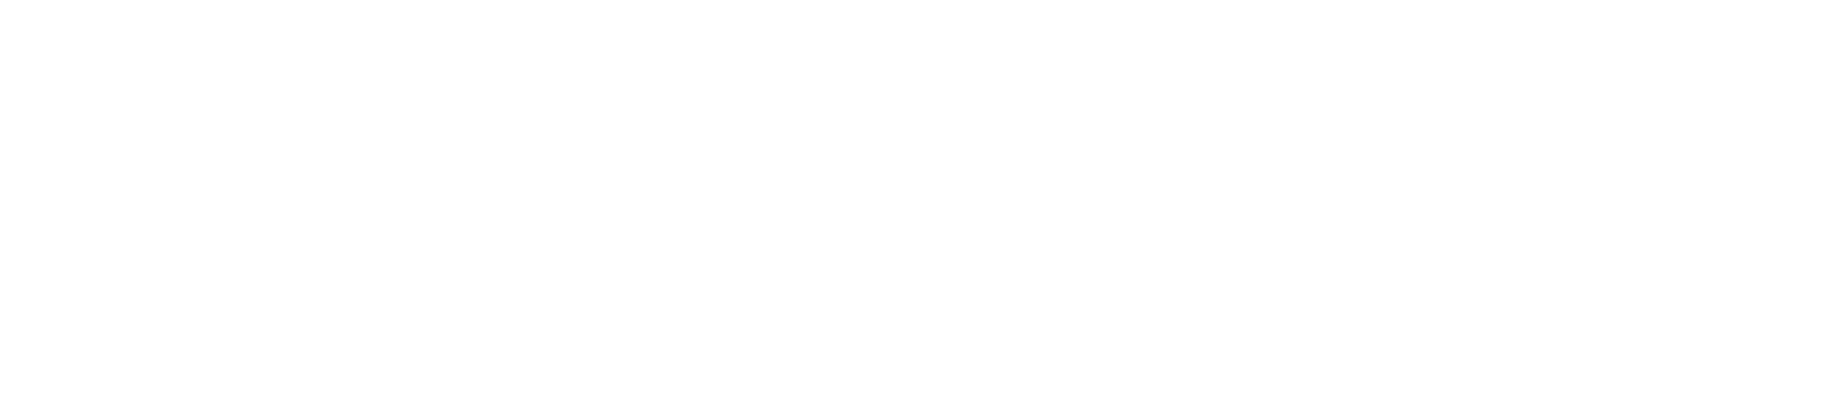 CSG Justice Center